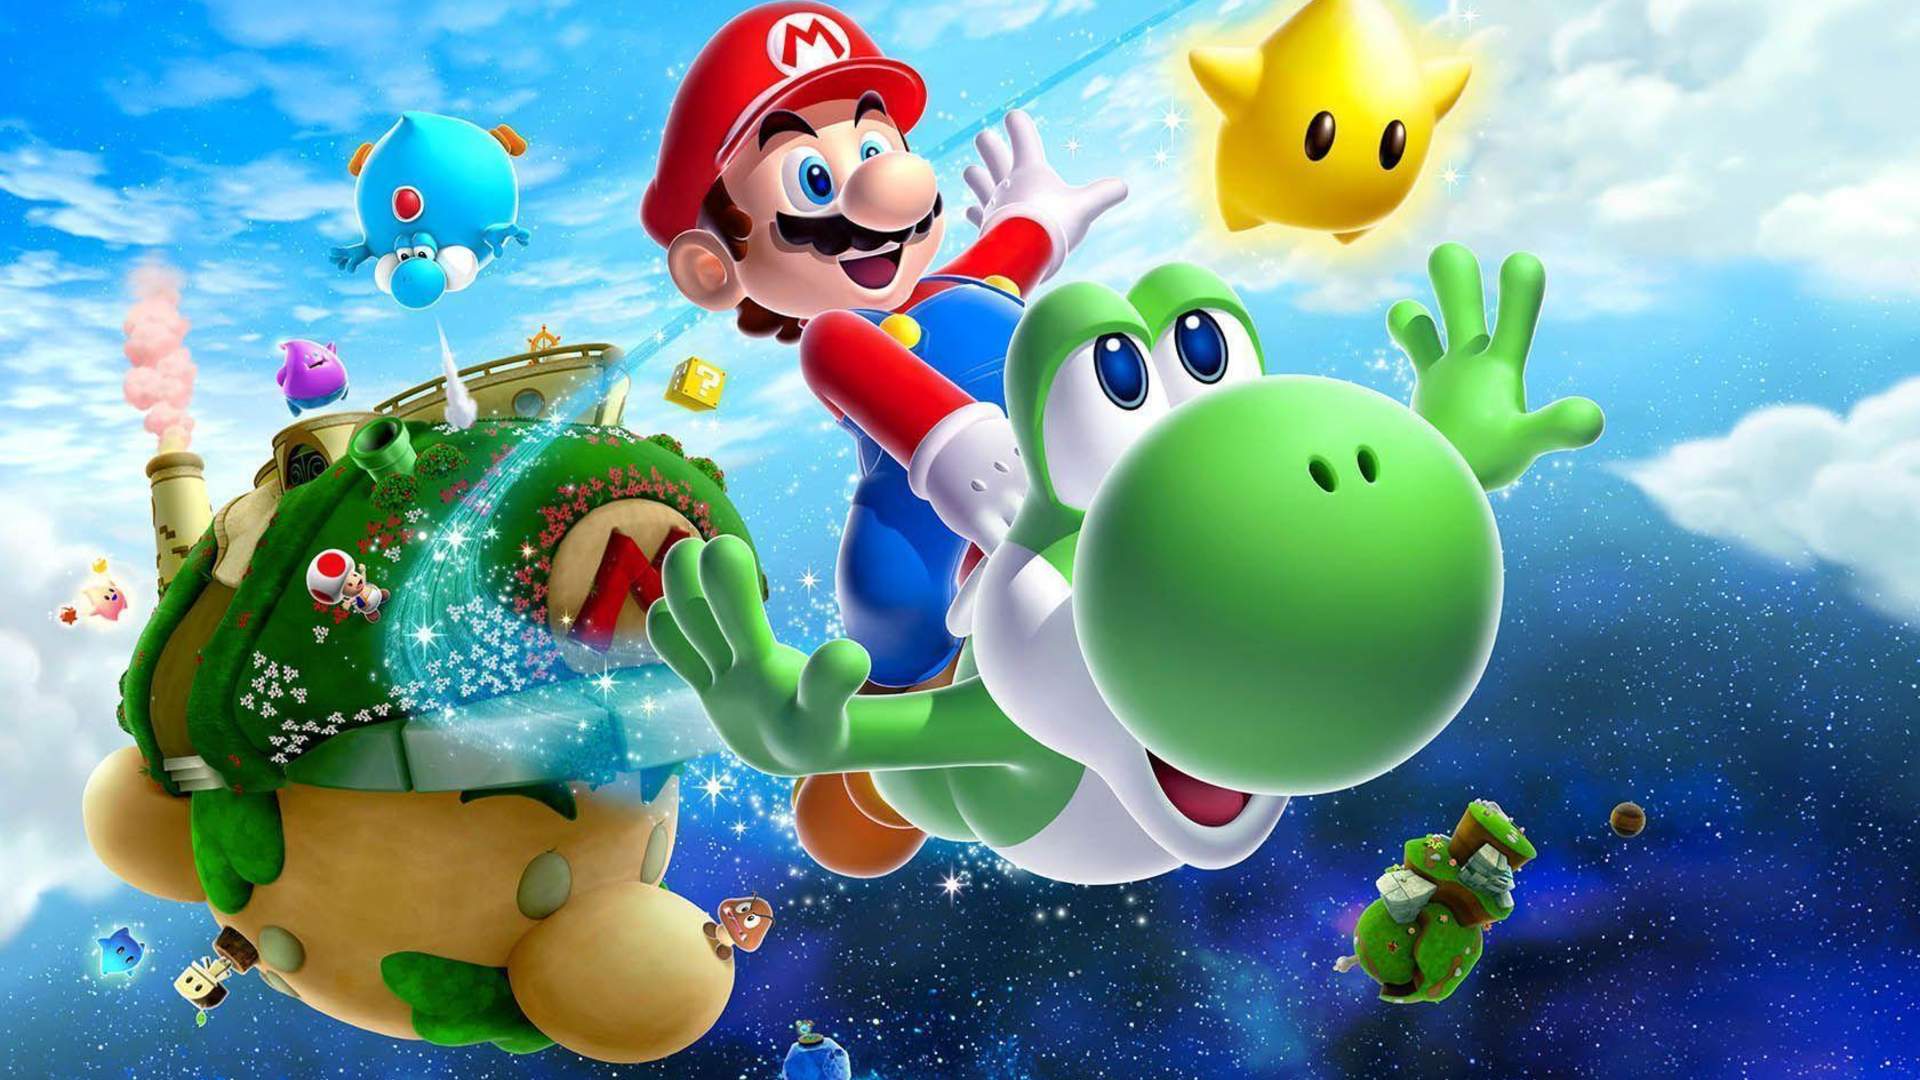 Nintendo - Super Mario Galaxy 2